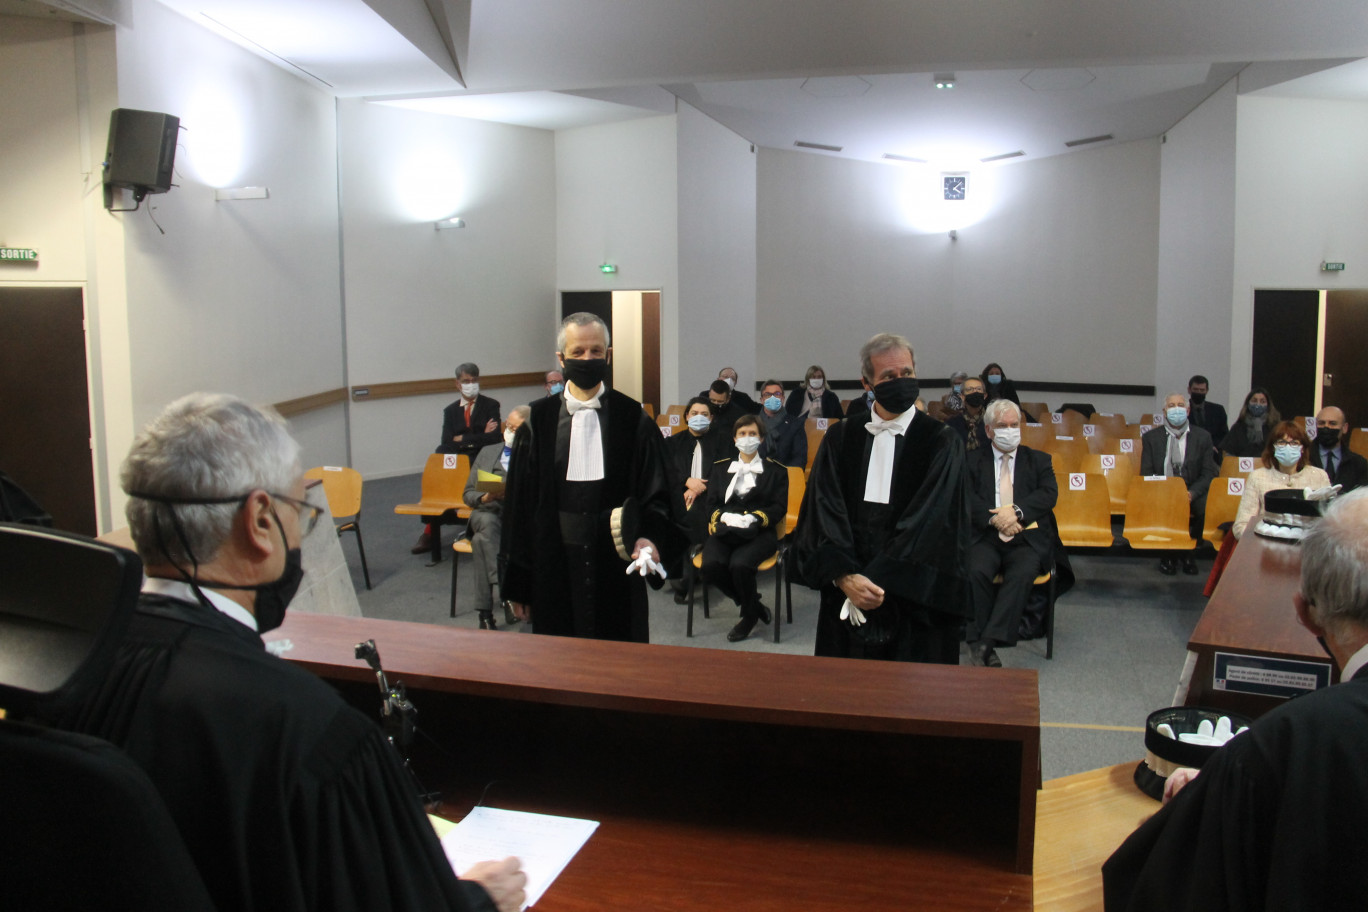 Deux nouveaux juges, Nicolas Geisler et Jean-Luc Moehrel, viennent d’être installés au tribunal de commerce nancéien. 